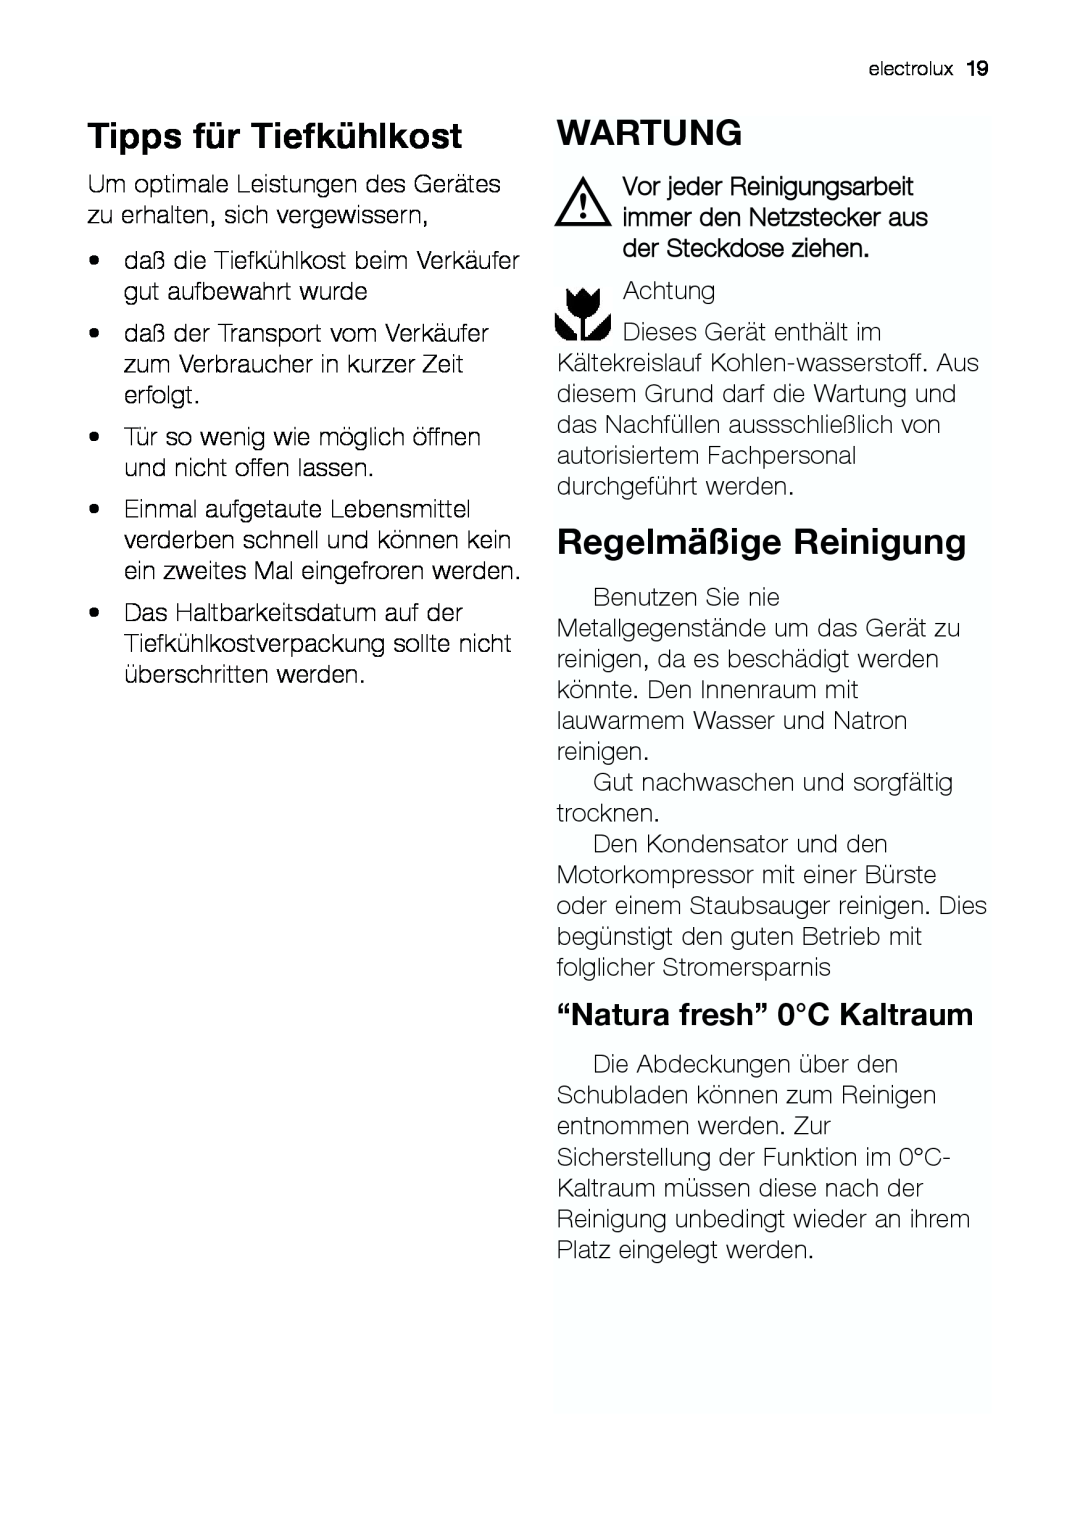 Electrolux JCZ 94181 manual Tipps für Tiefkühlkost, Wartung, Regelmäßige Reinigung, “Natura fresh” 0C Kaltraum 